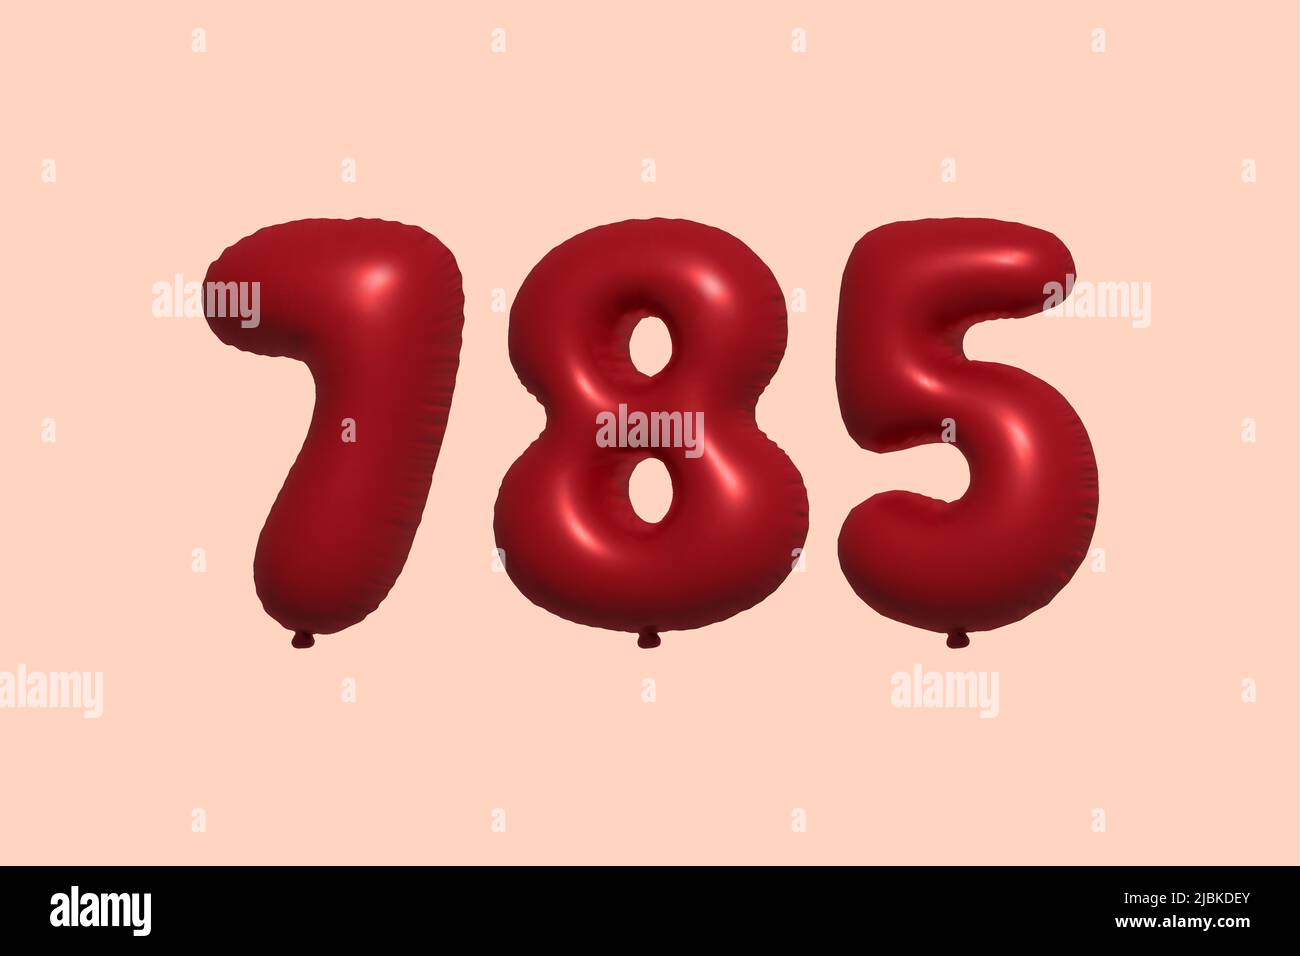 palloncino in numero 785 3d realizzato con rendering realistico di palloncino in aria metallica 3d. 3D palloncini di elio rosso per la vendita decorazione Party compleanno, celebrare anniversario, Vacanza nuziale. Illustrazione vettoriale Illustrazione Vettoriale